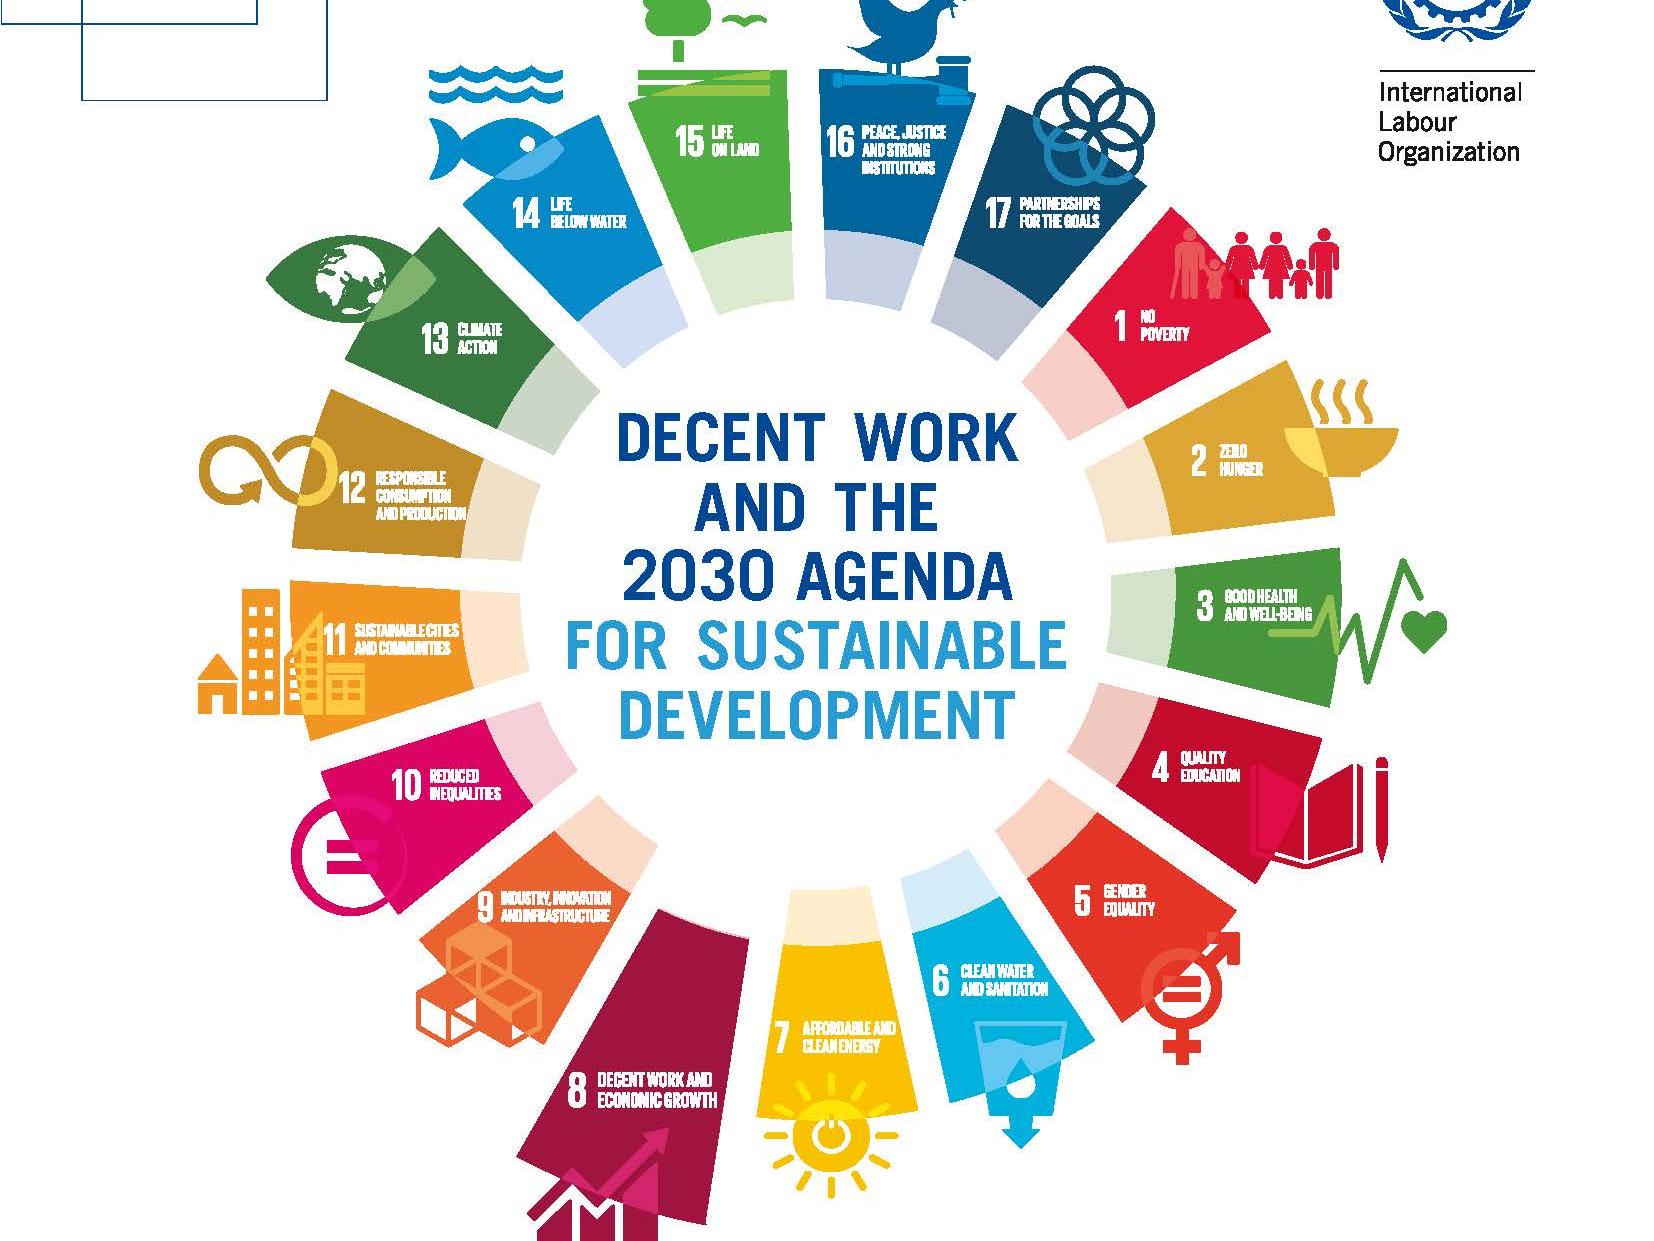 Decent work for sustainable development (DW4SD) Resource Platform